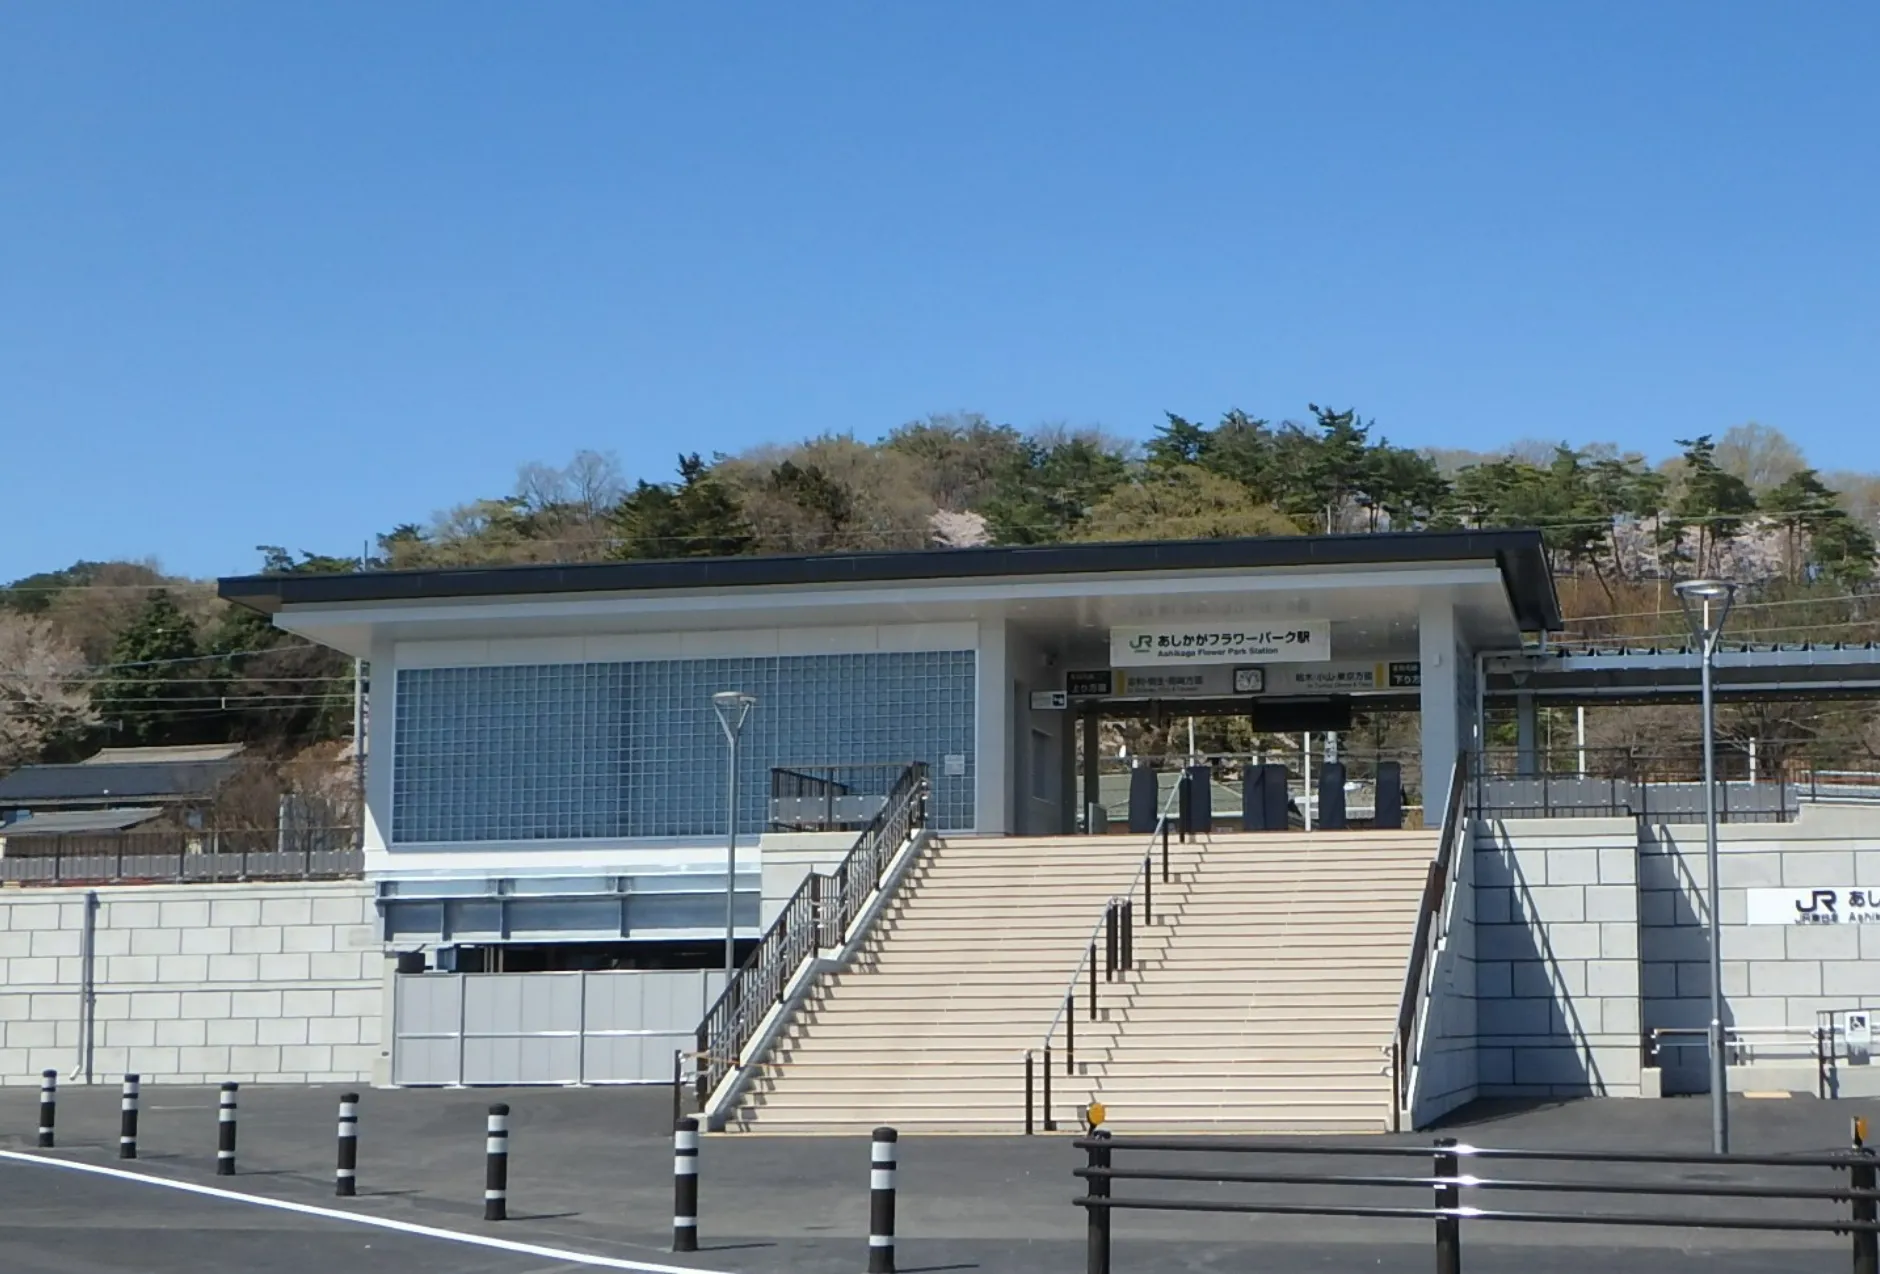 JR両毛線 富田・足利間新駅設置工事（あしかがフラワーパーク）のサムネイル画像です